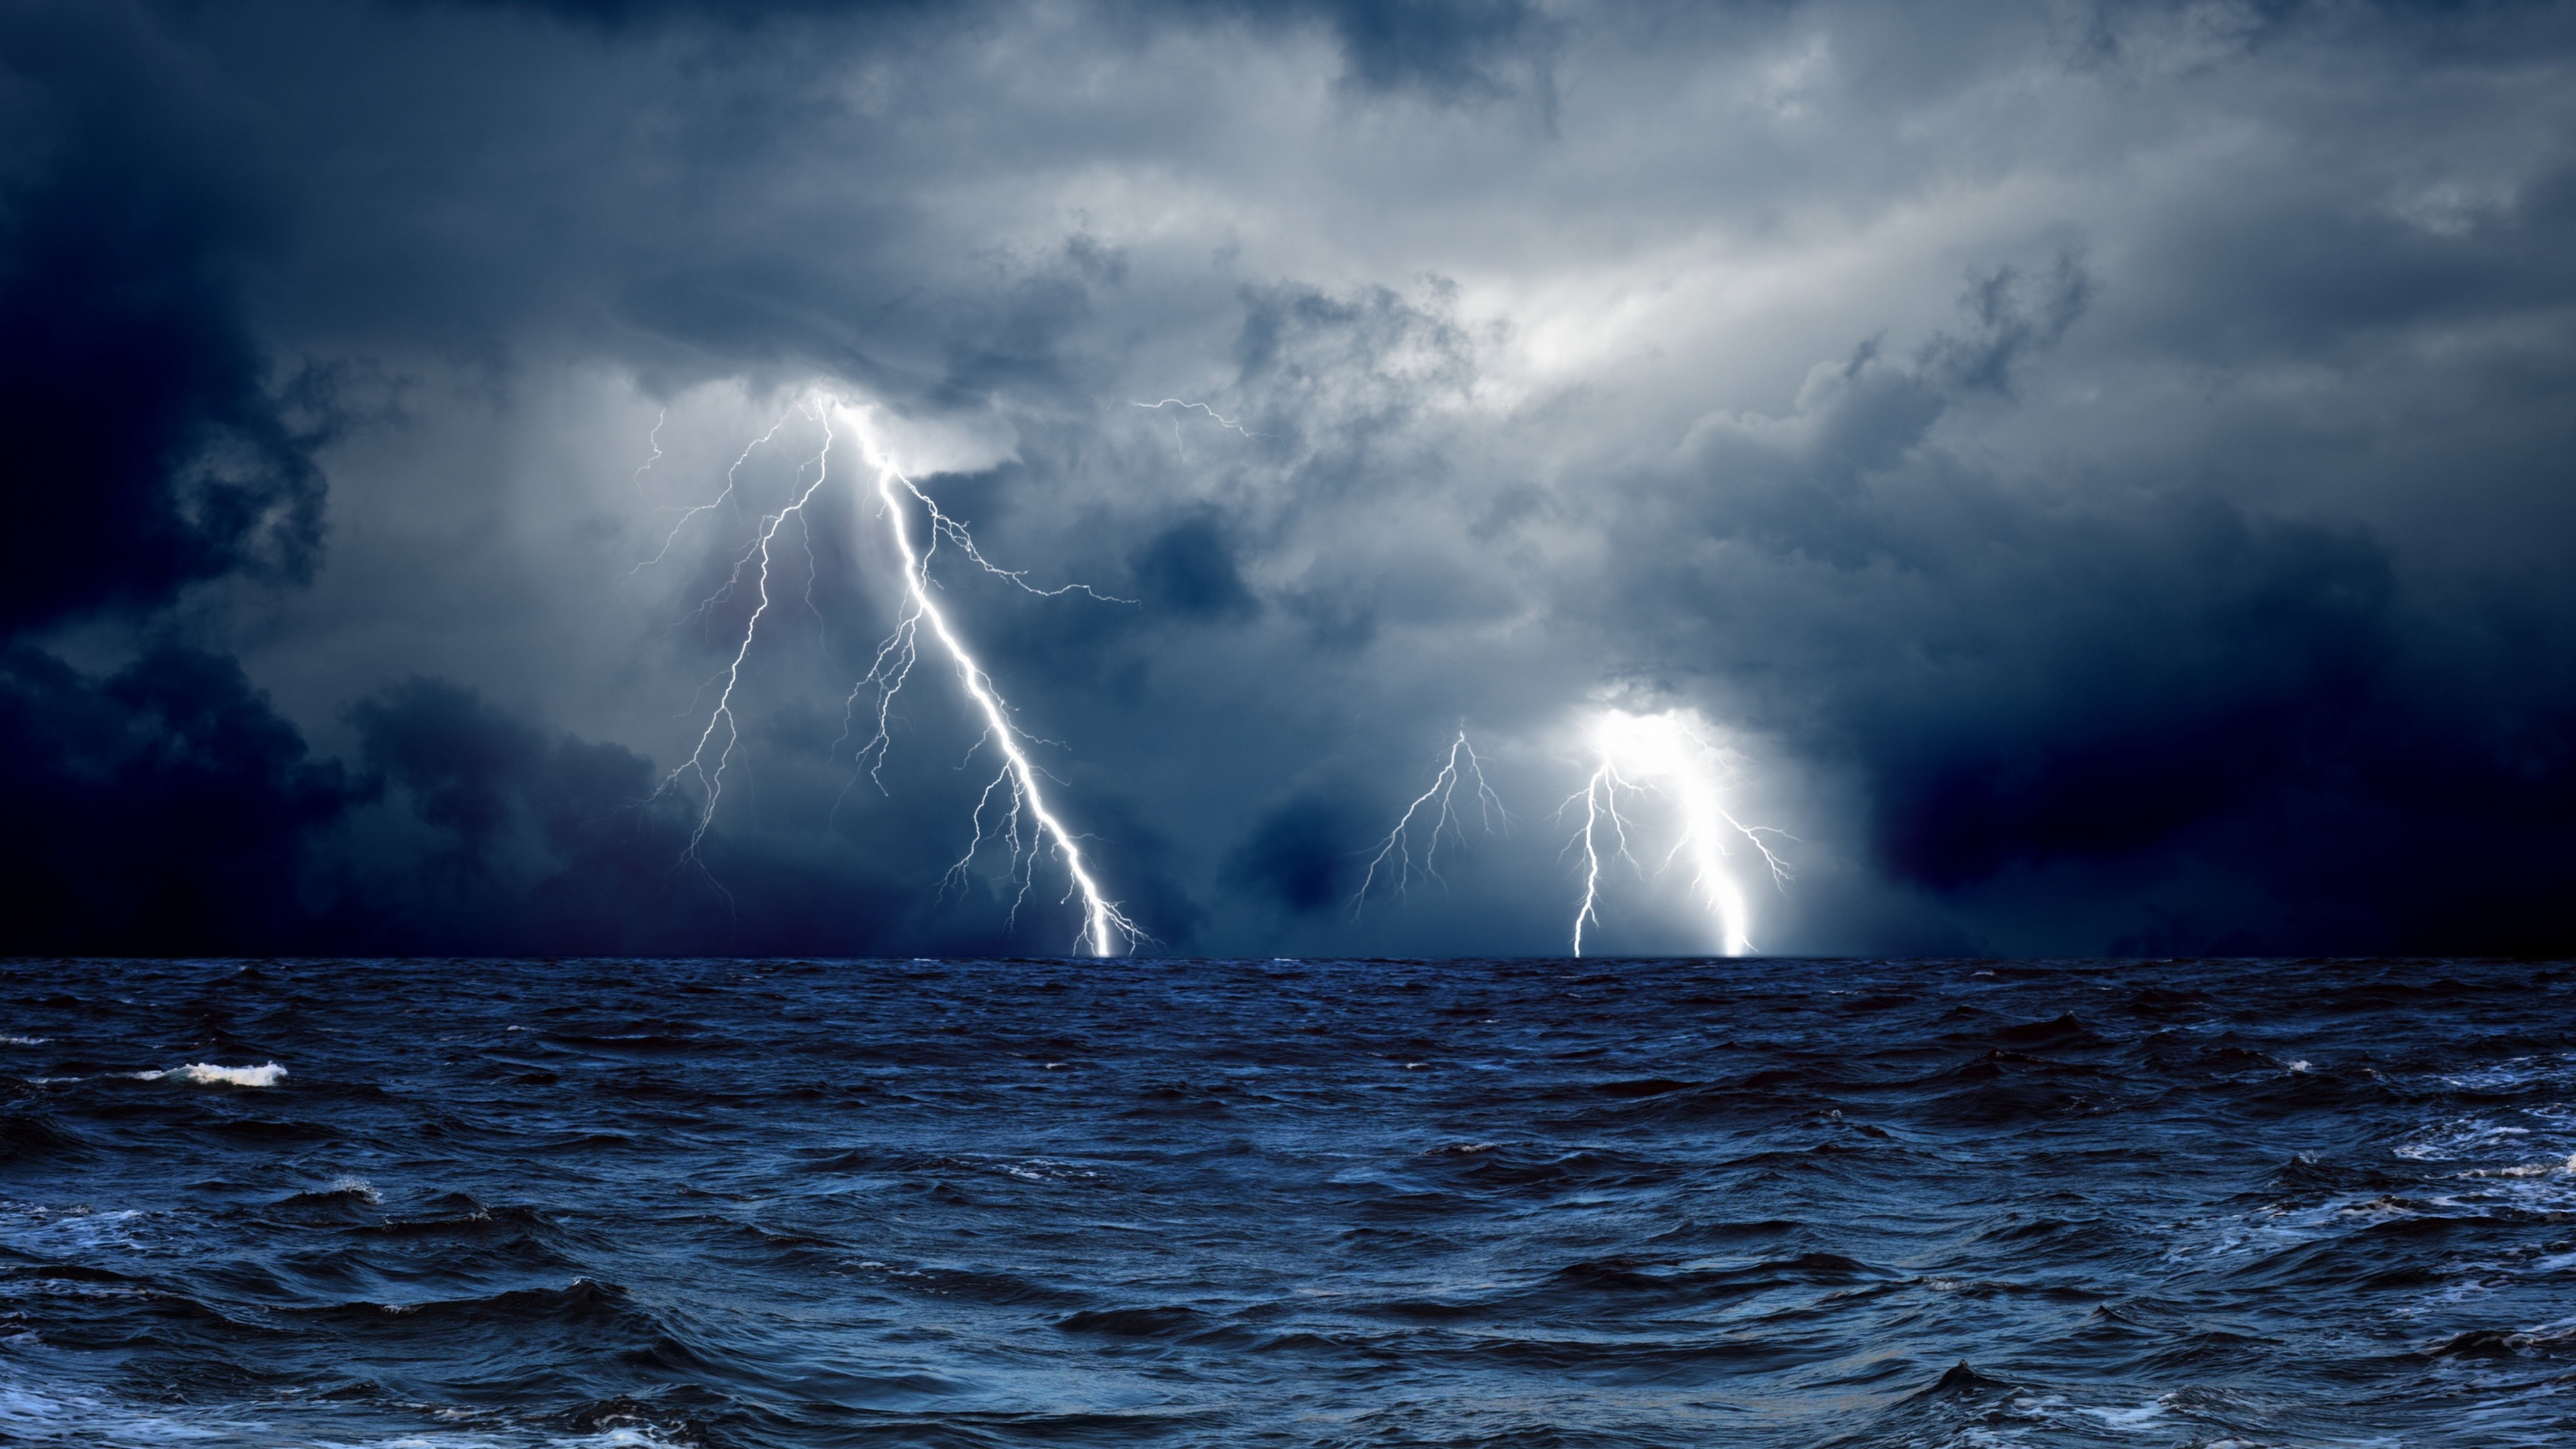 Wallpaper Sea 5k 4k 8k Ocean Storm Lightning